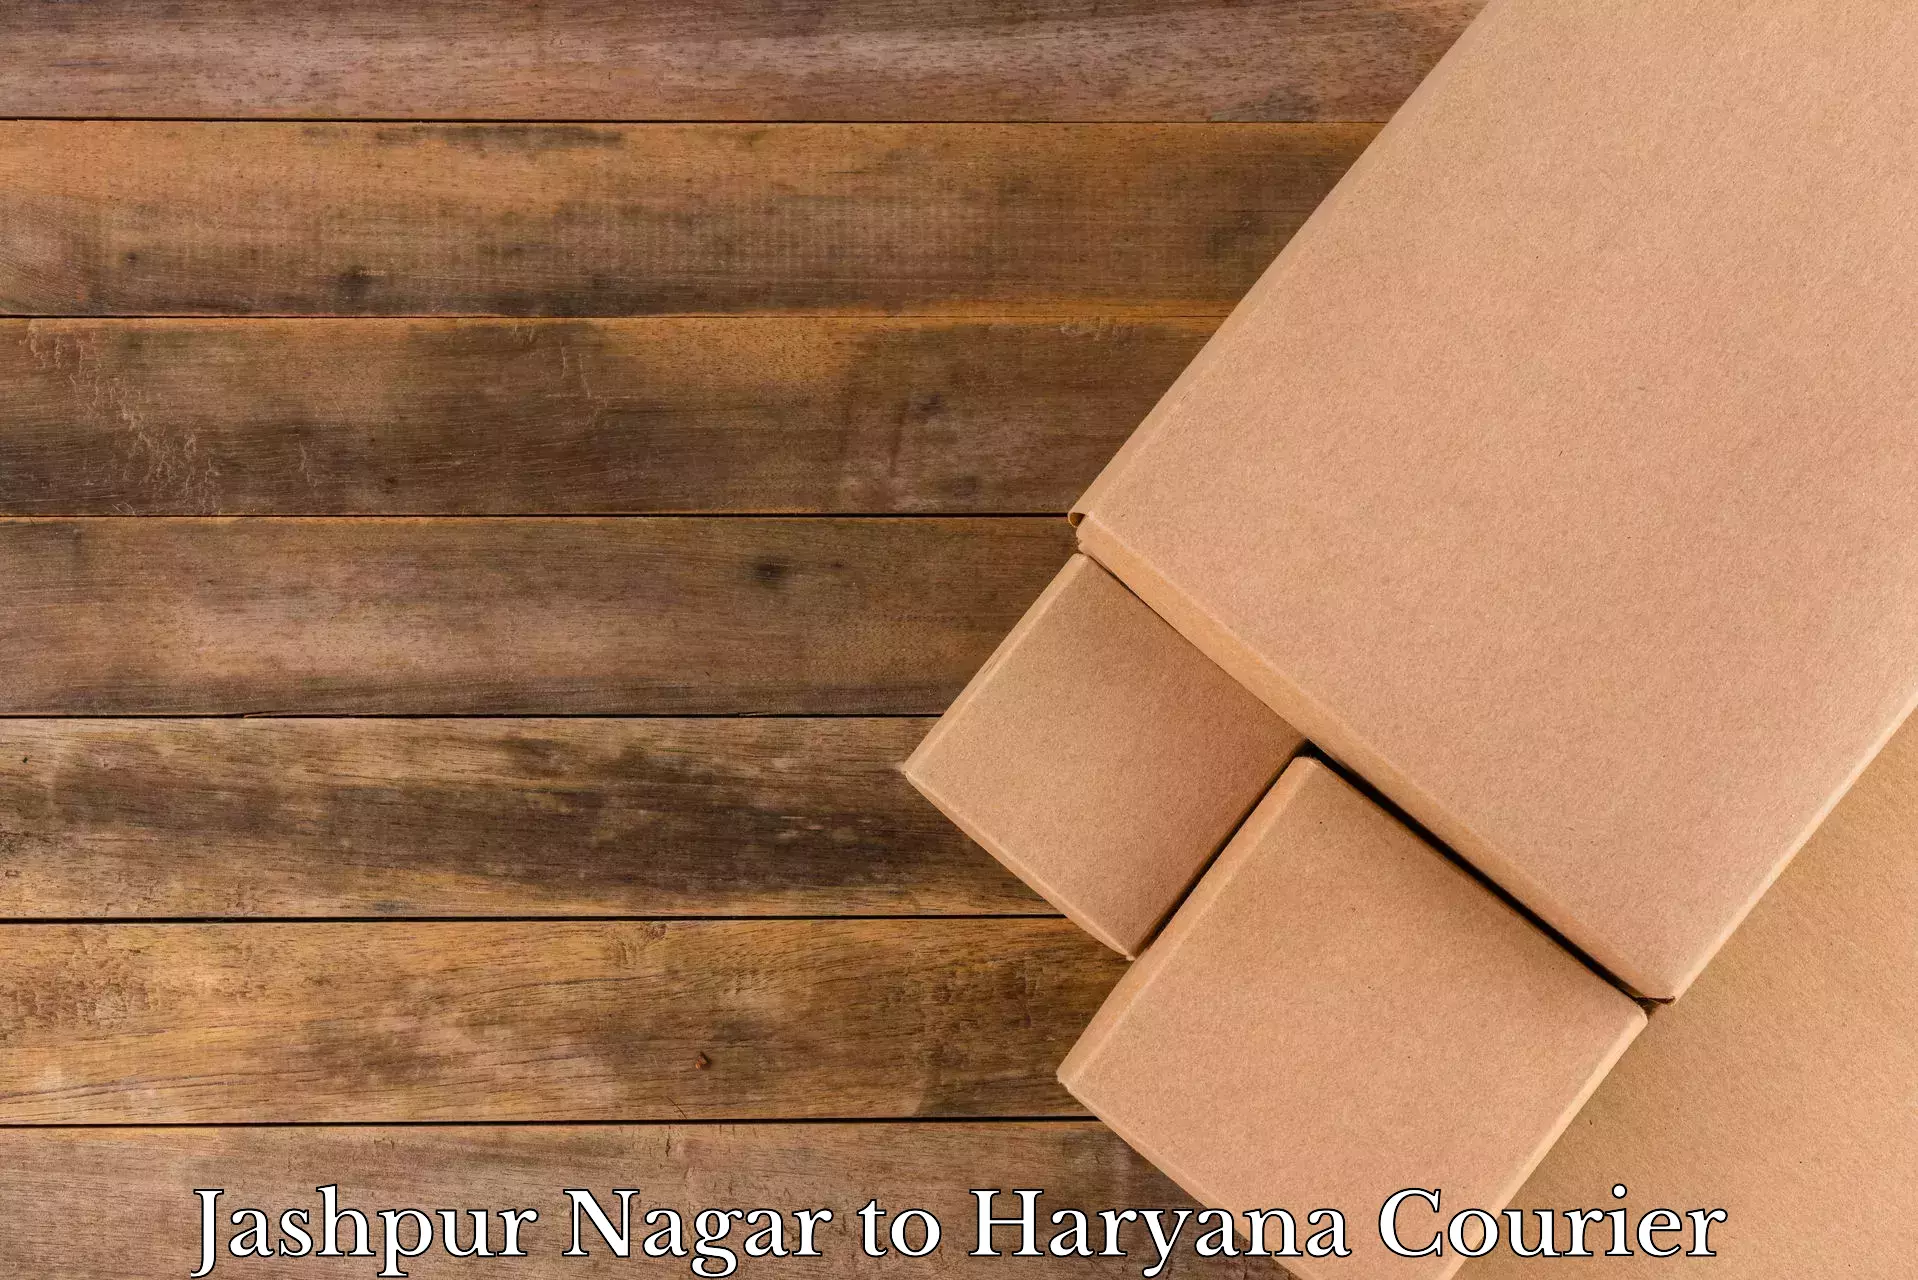 Residential moving services Jashpur Nagar to Haryana